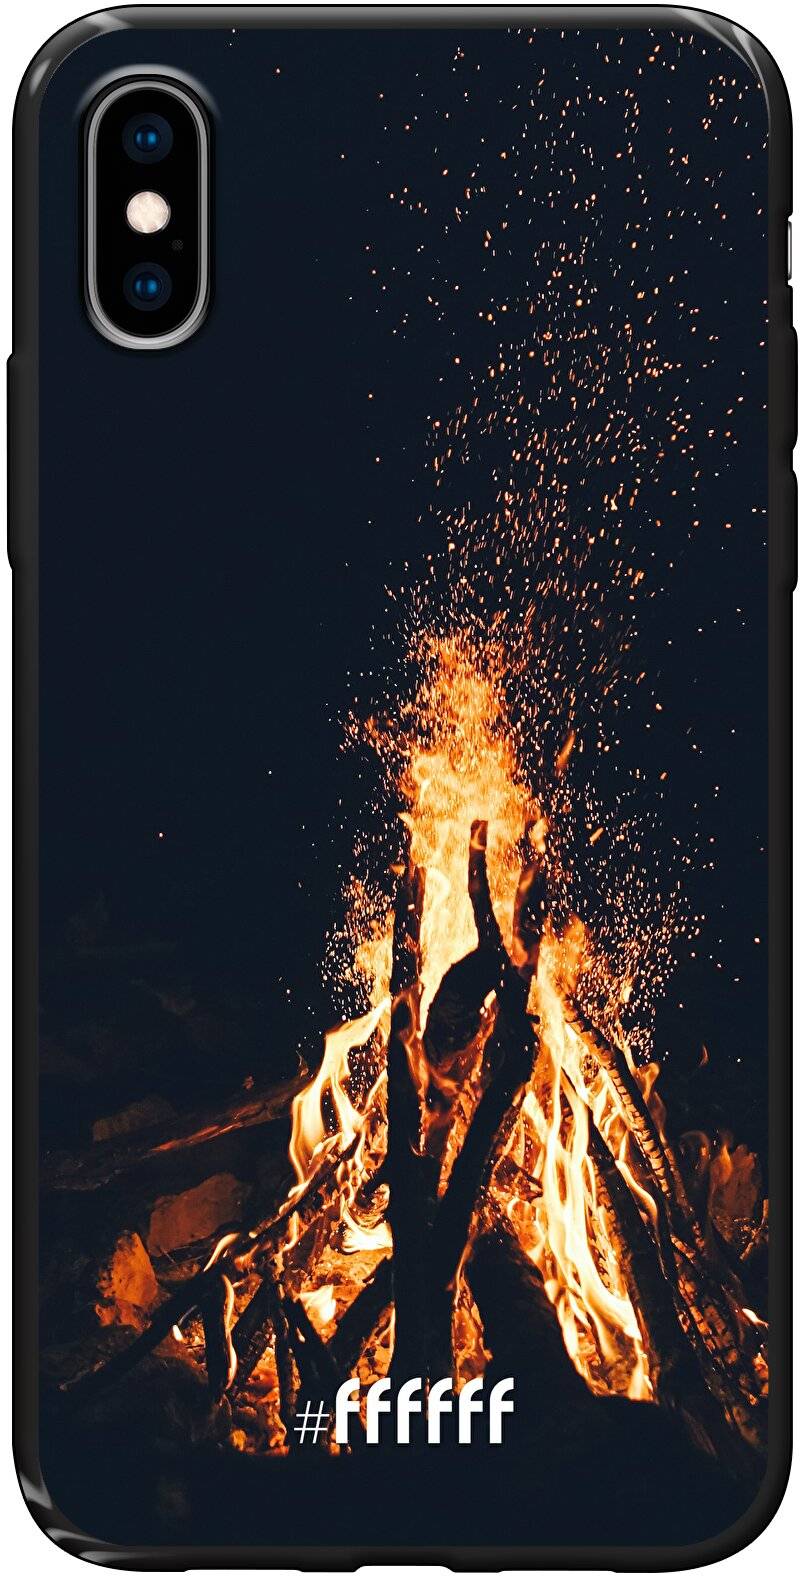 Bonfire iPhone X